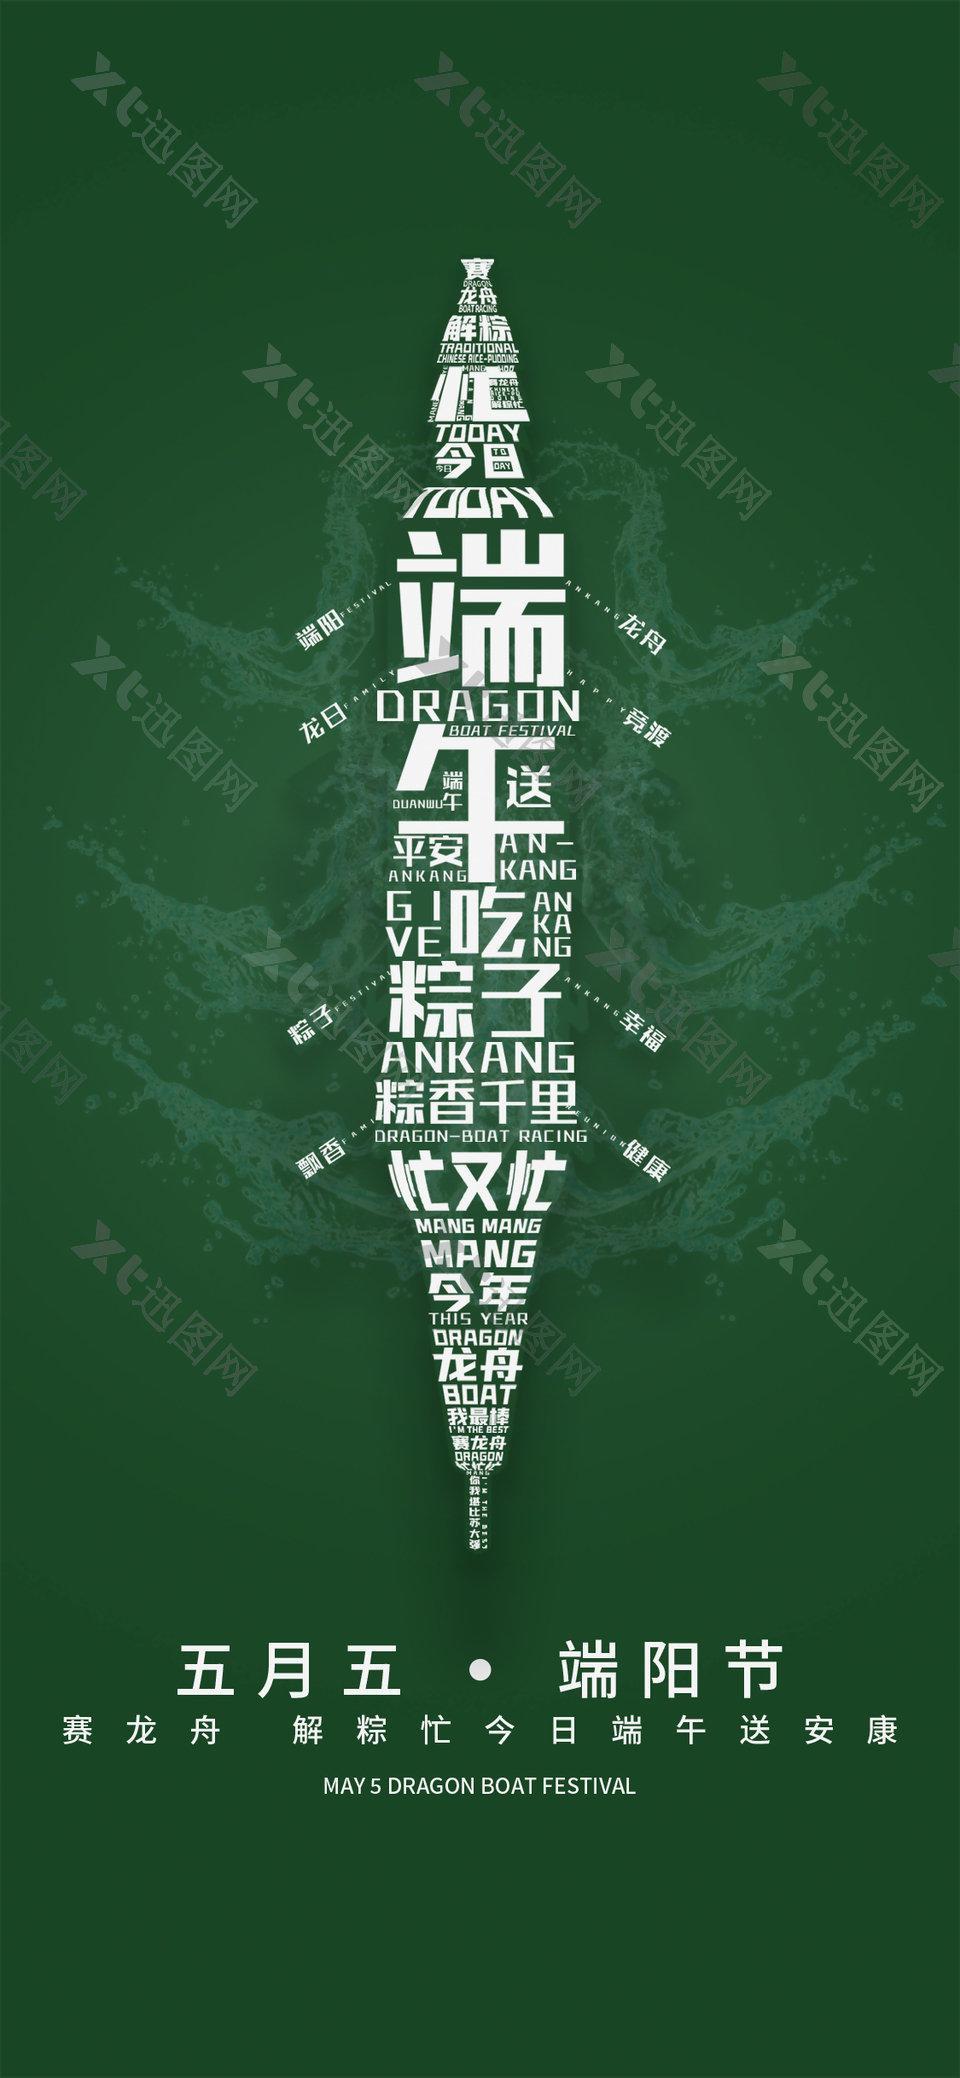 五月五端阳节趣味字体组合龙舟海报